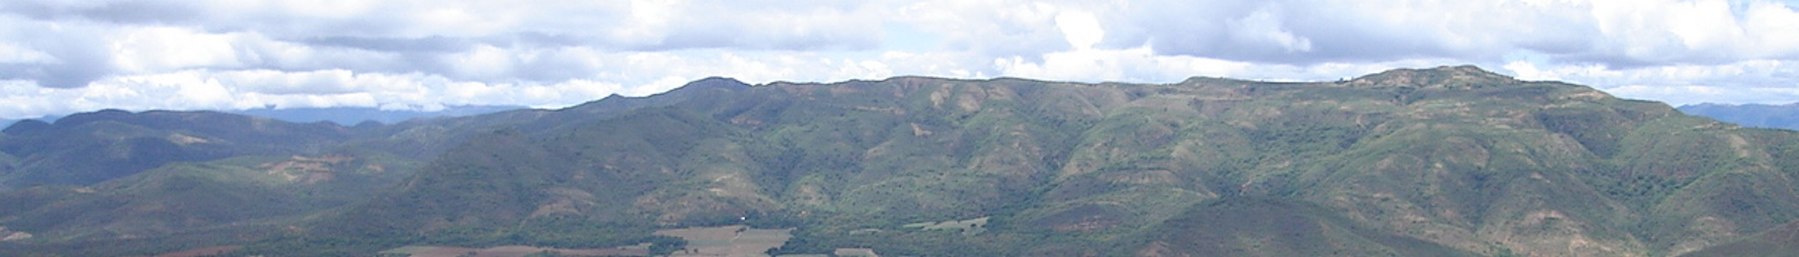 Bandera de WV Montañas de las Tierras Bajas Tropicales sobre Comarpa.jpg